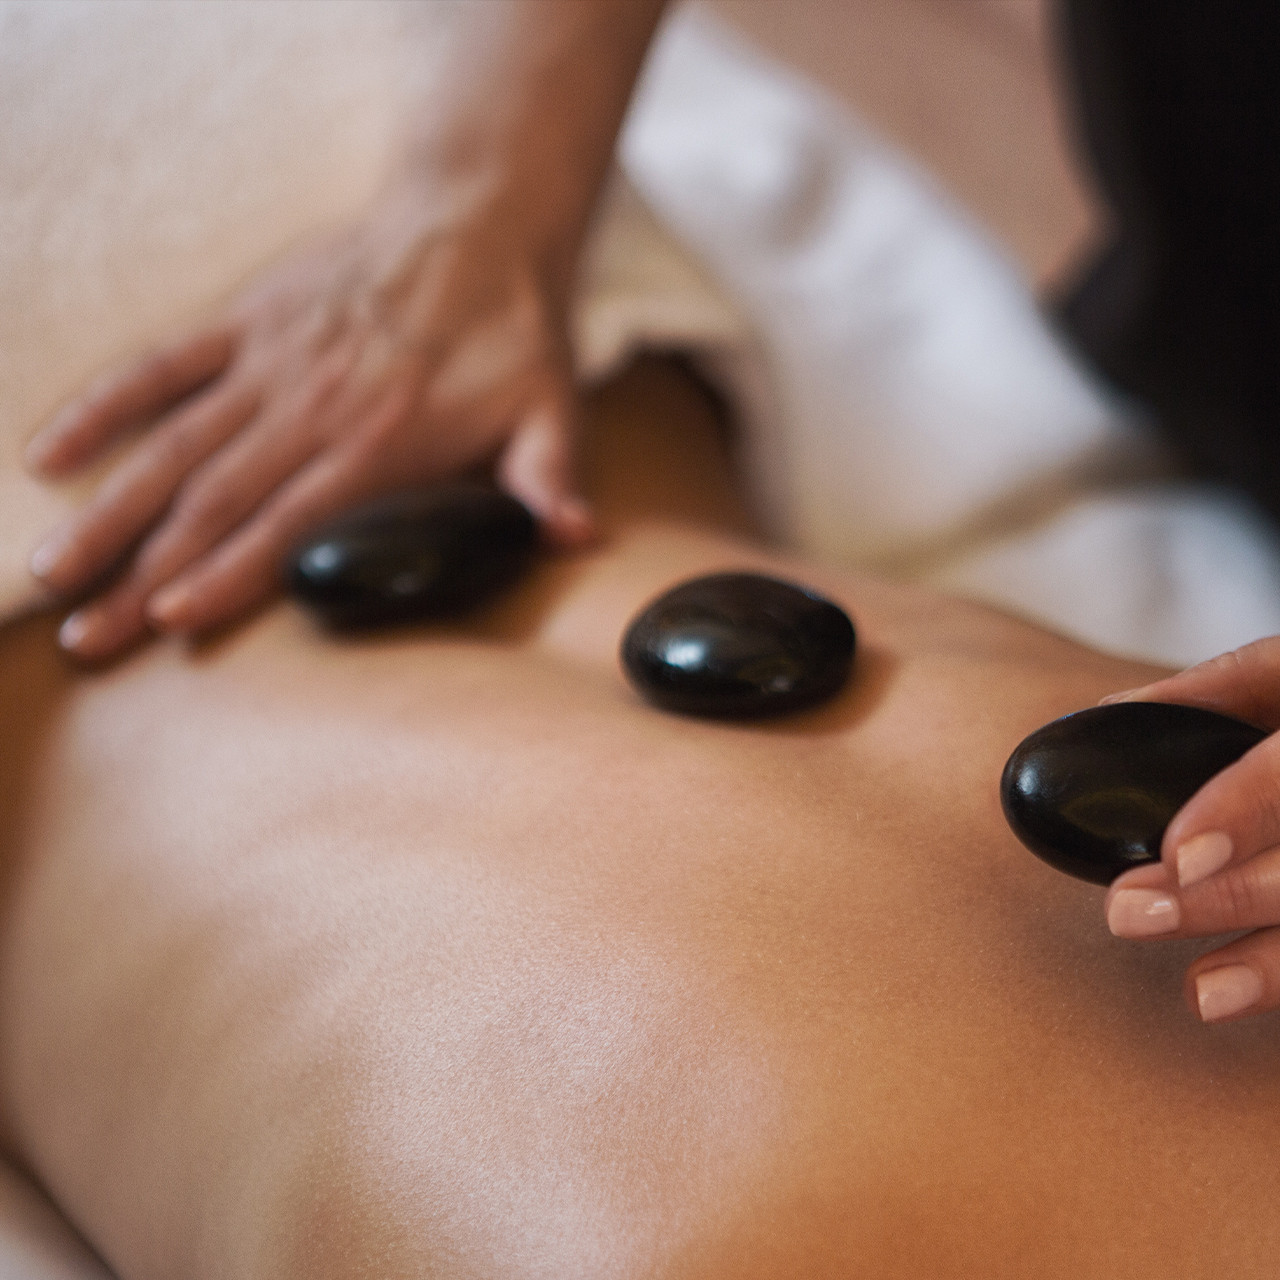 Vrouw ligt op buik tijdens een hotstone massage en geniet